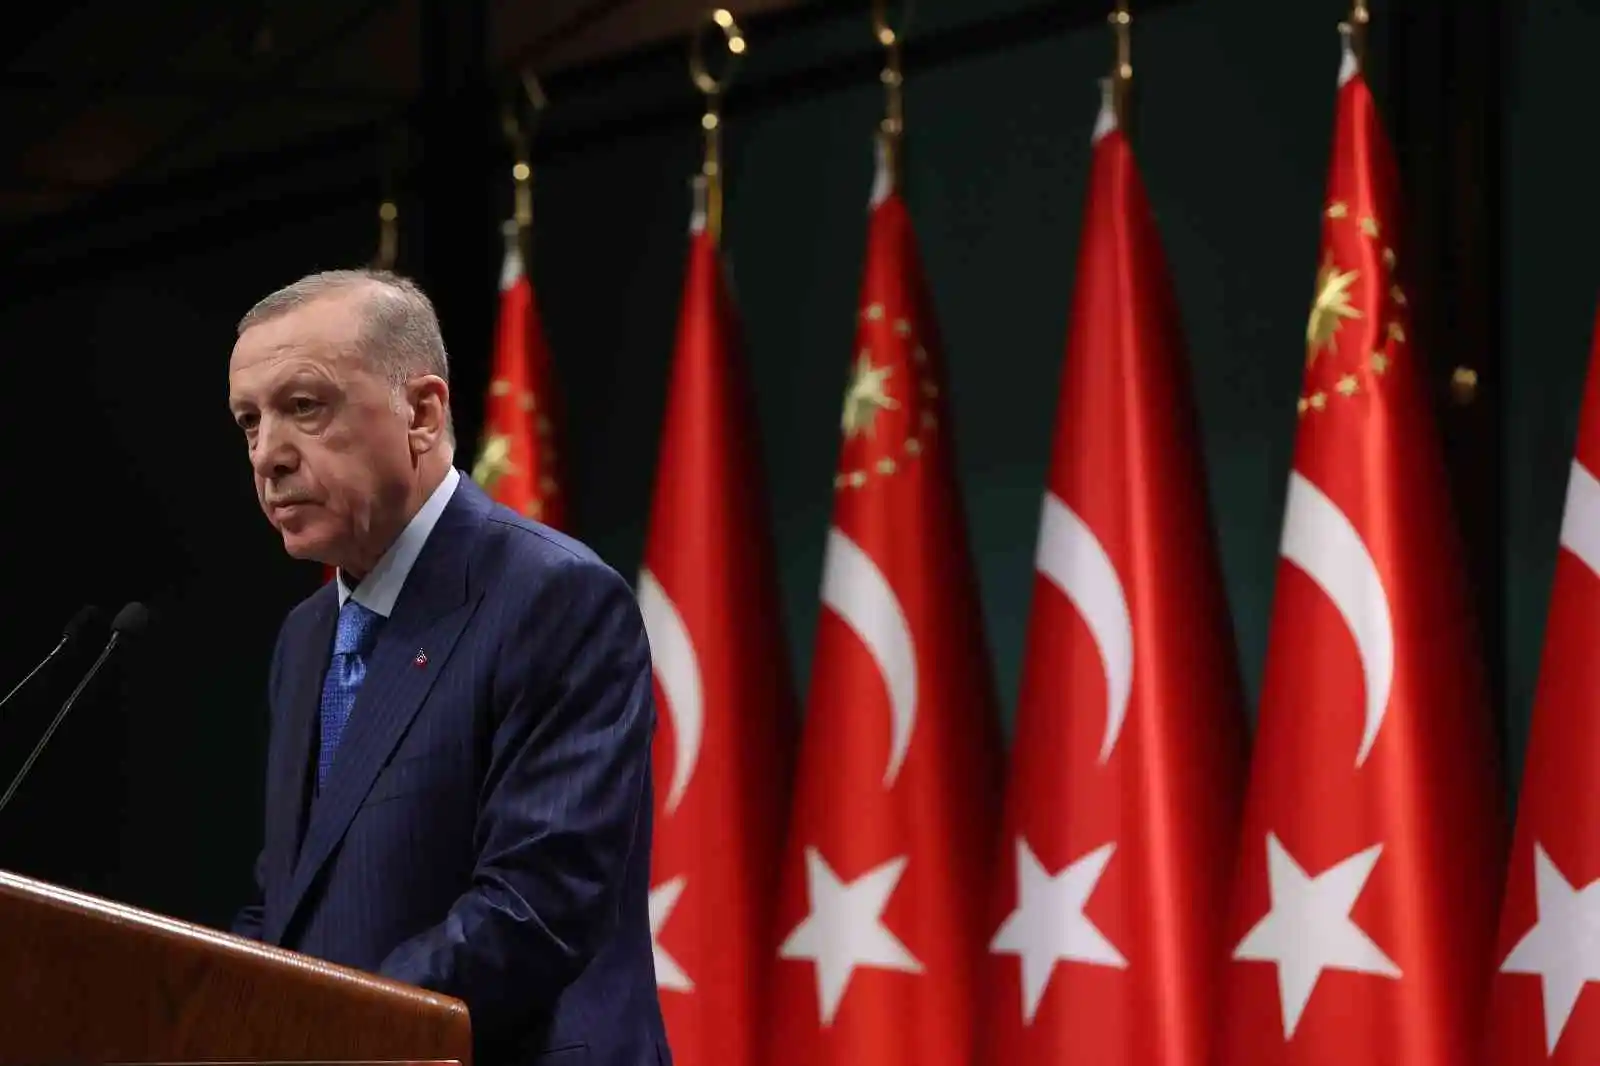 Cumhurbaşkanı Erdoğan: "14 Mayıs 2023 Pazar gününün her bakımdan seçim için en uygun tarih olduğunu gördük"
